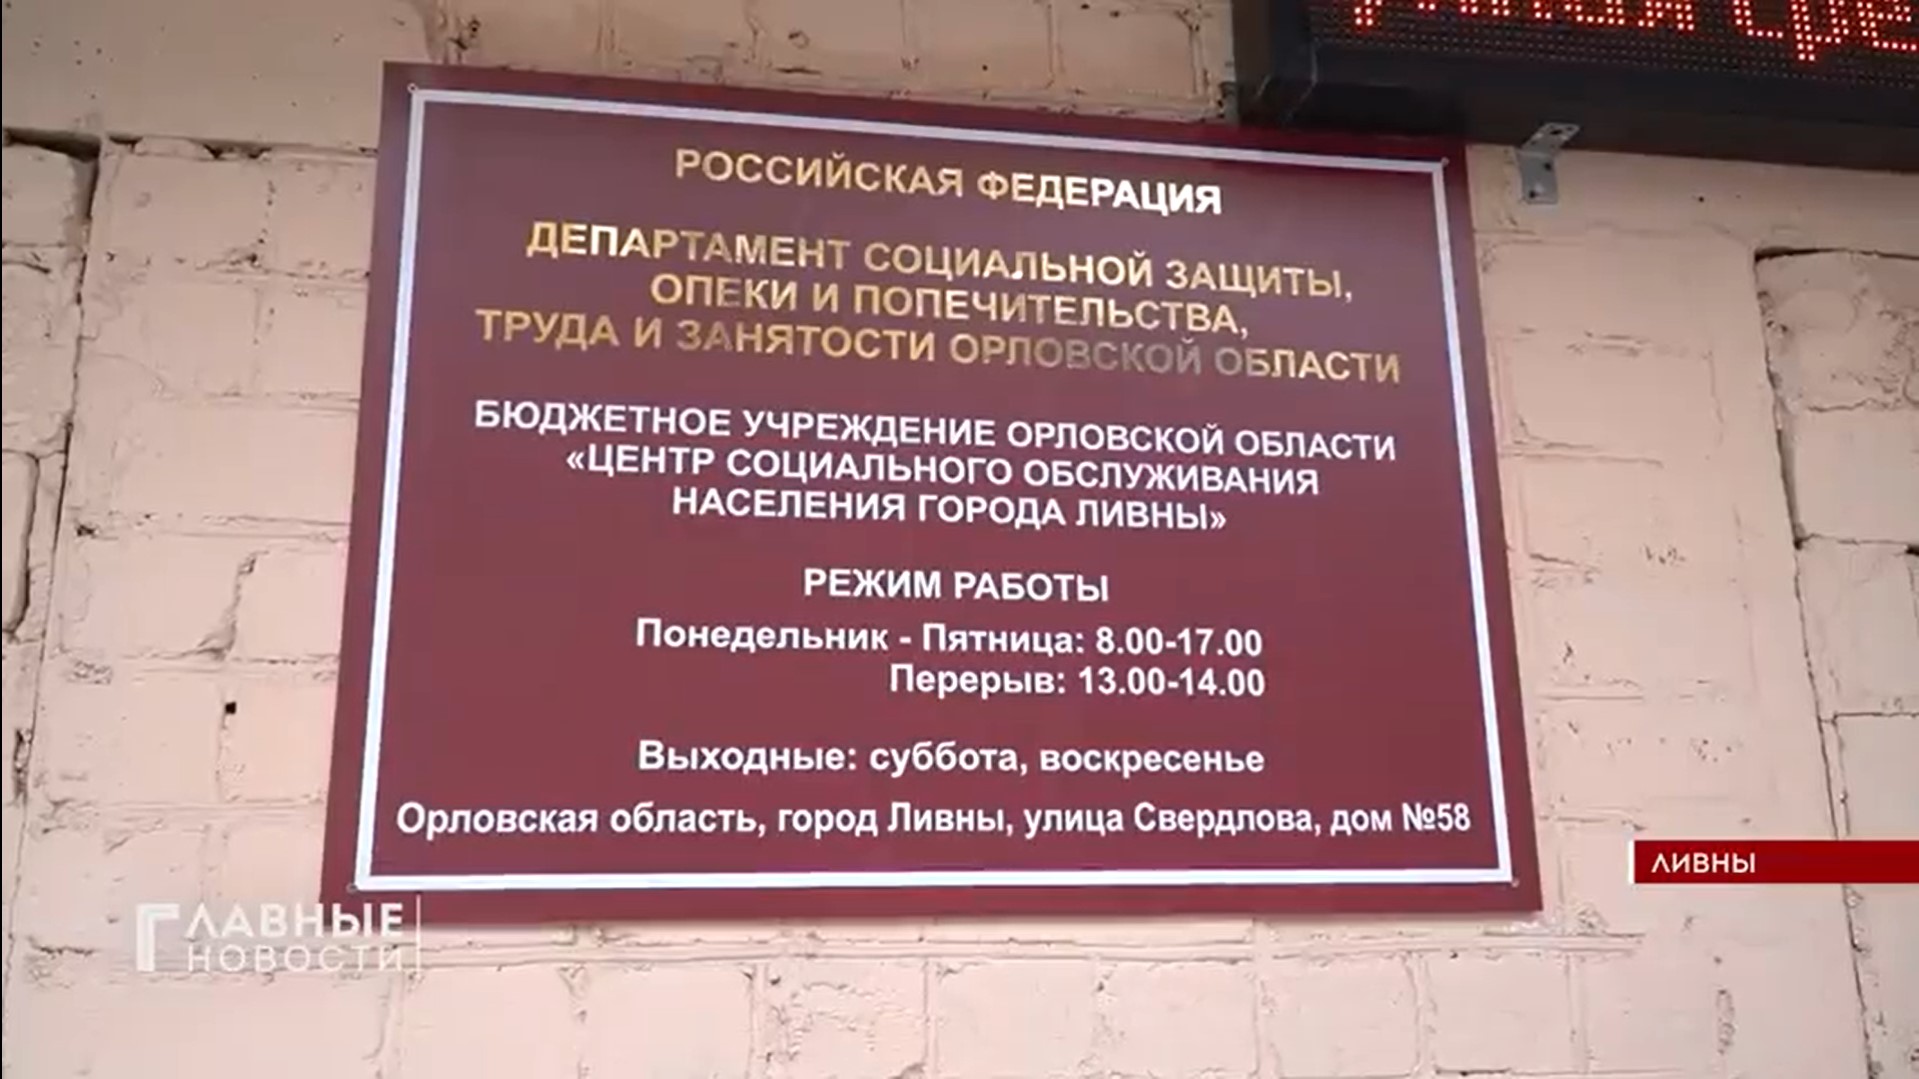 На телеканале "Первый областной" вышел сюжет о деятельности Центра социального обслуживания населения города Ливны в новых условиях